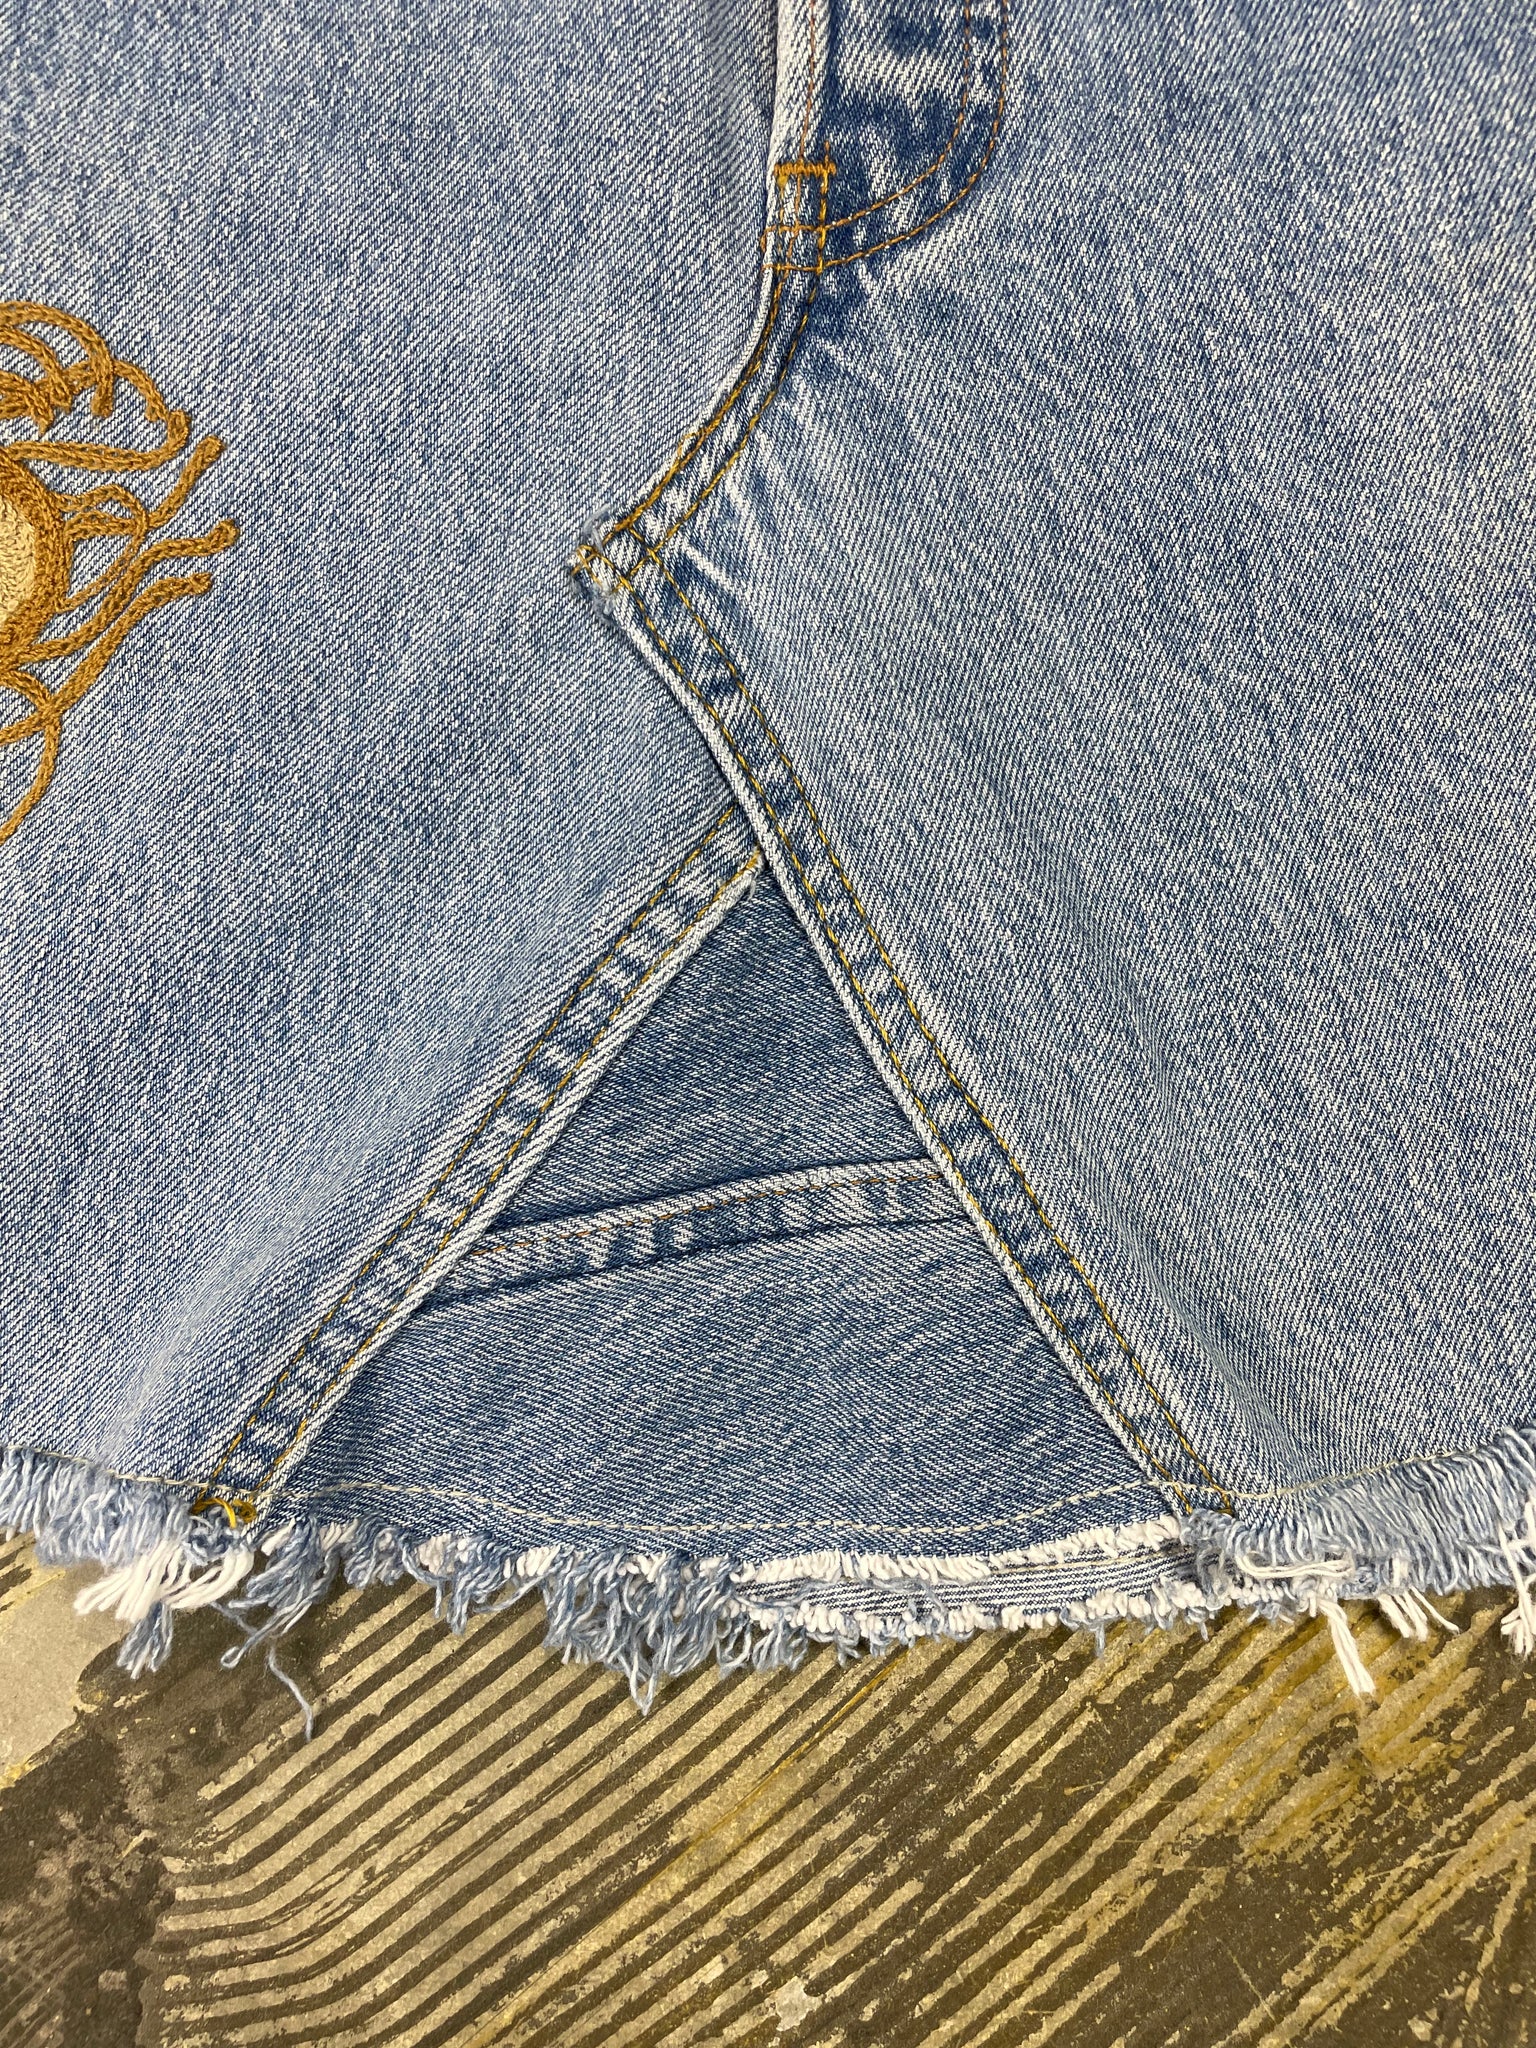 Custom Chain Stitched Vintage Levi 501 Denim Skirt (JYJ-133)